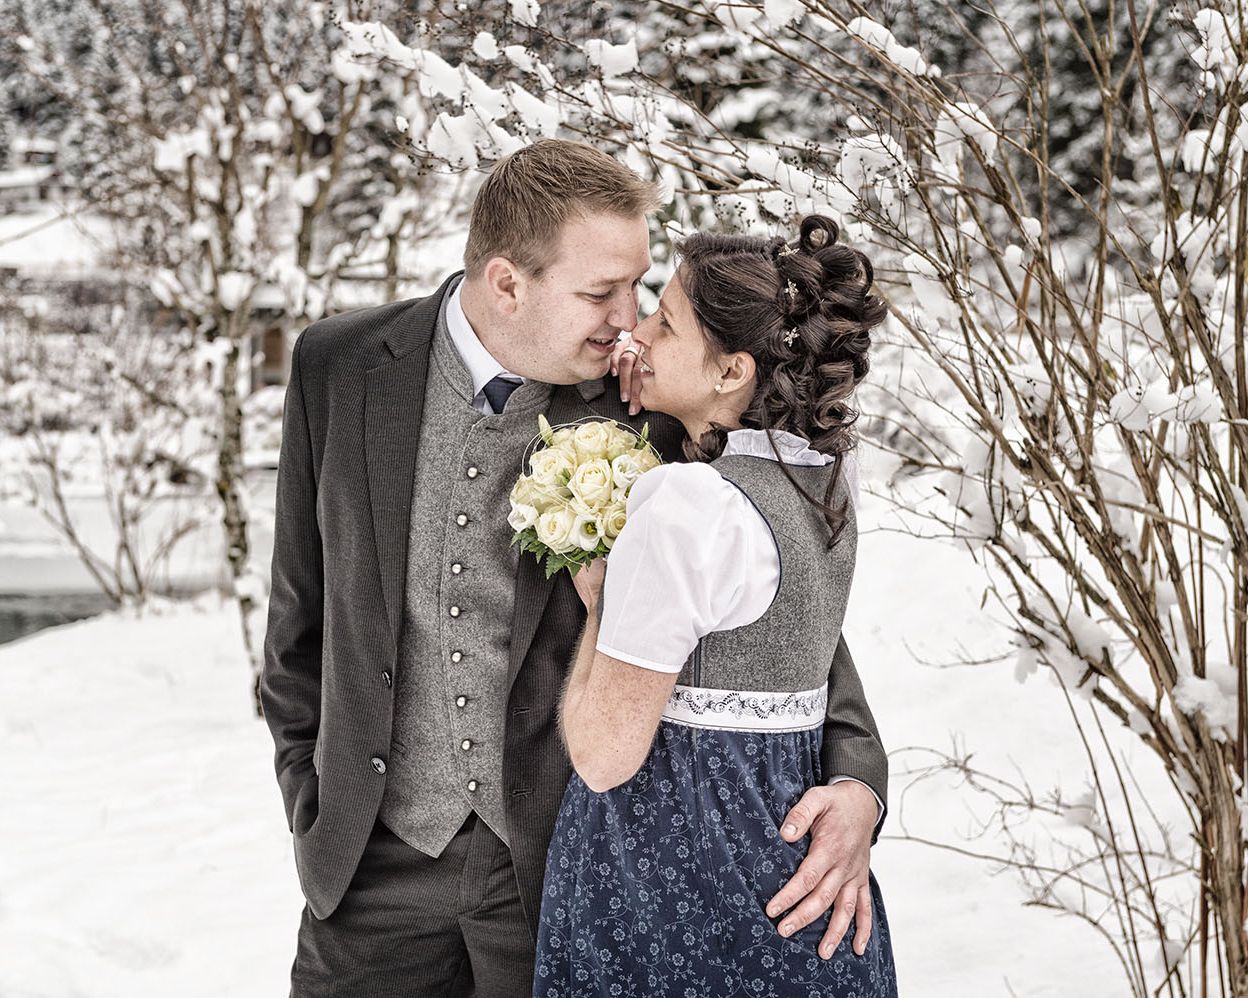 Die Hochzeit von Jacky & Armin - The Weddingassistant © Gerhard Wolkersdorfer